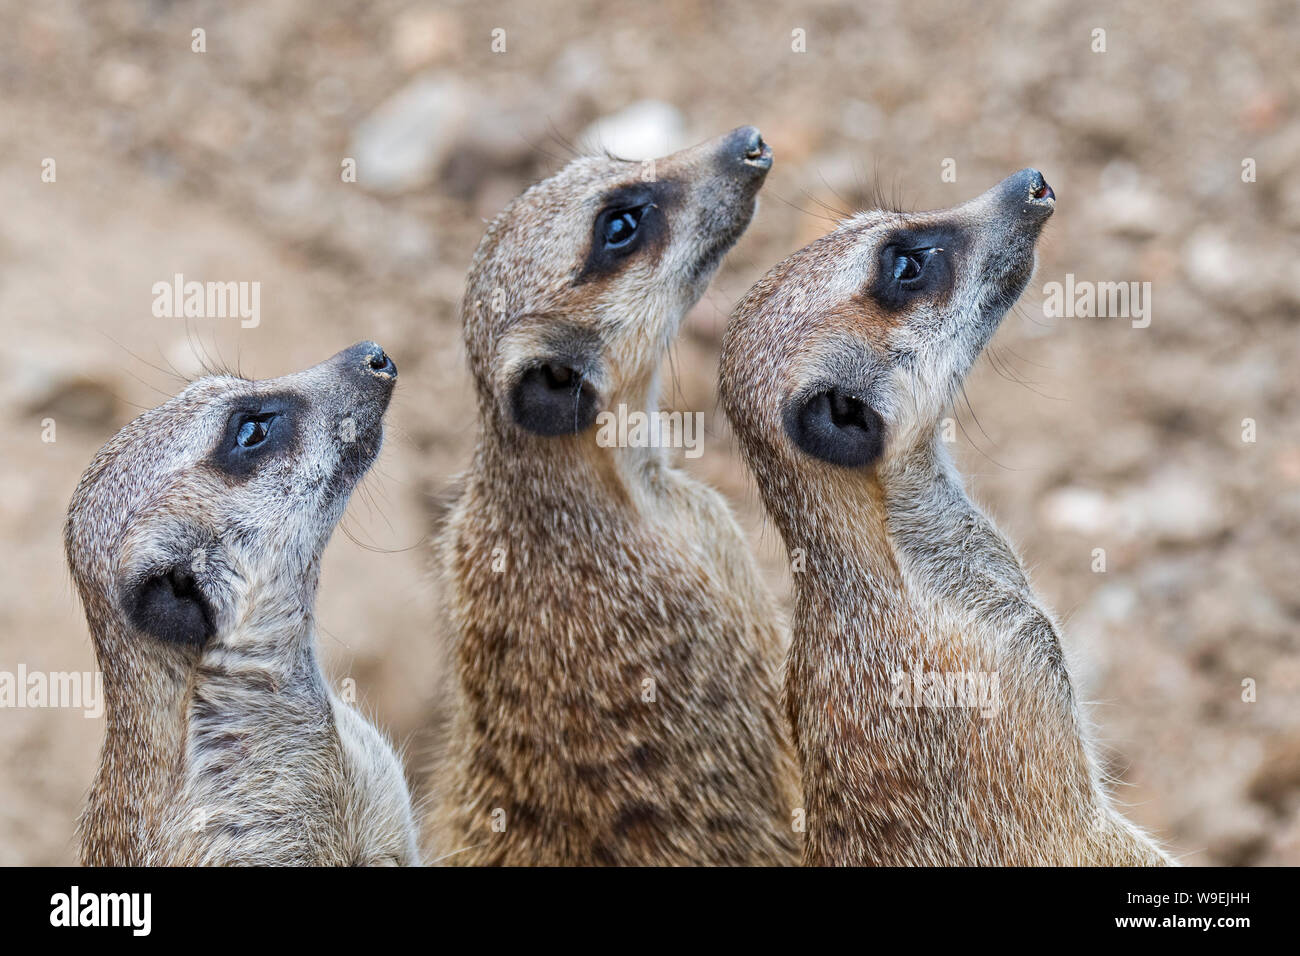 Les suricates alerte / suricates (Suricata suricatta), et garder un œil sur les oiseaux de proie, les autochtones aux déserts de l'Afrique du Sud Banque D'Images